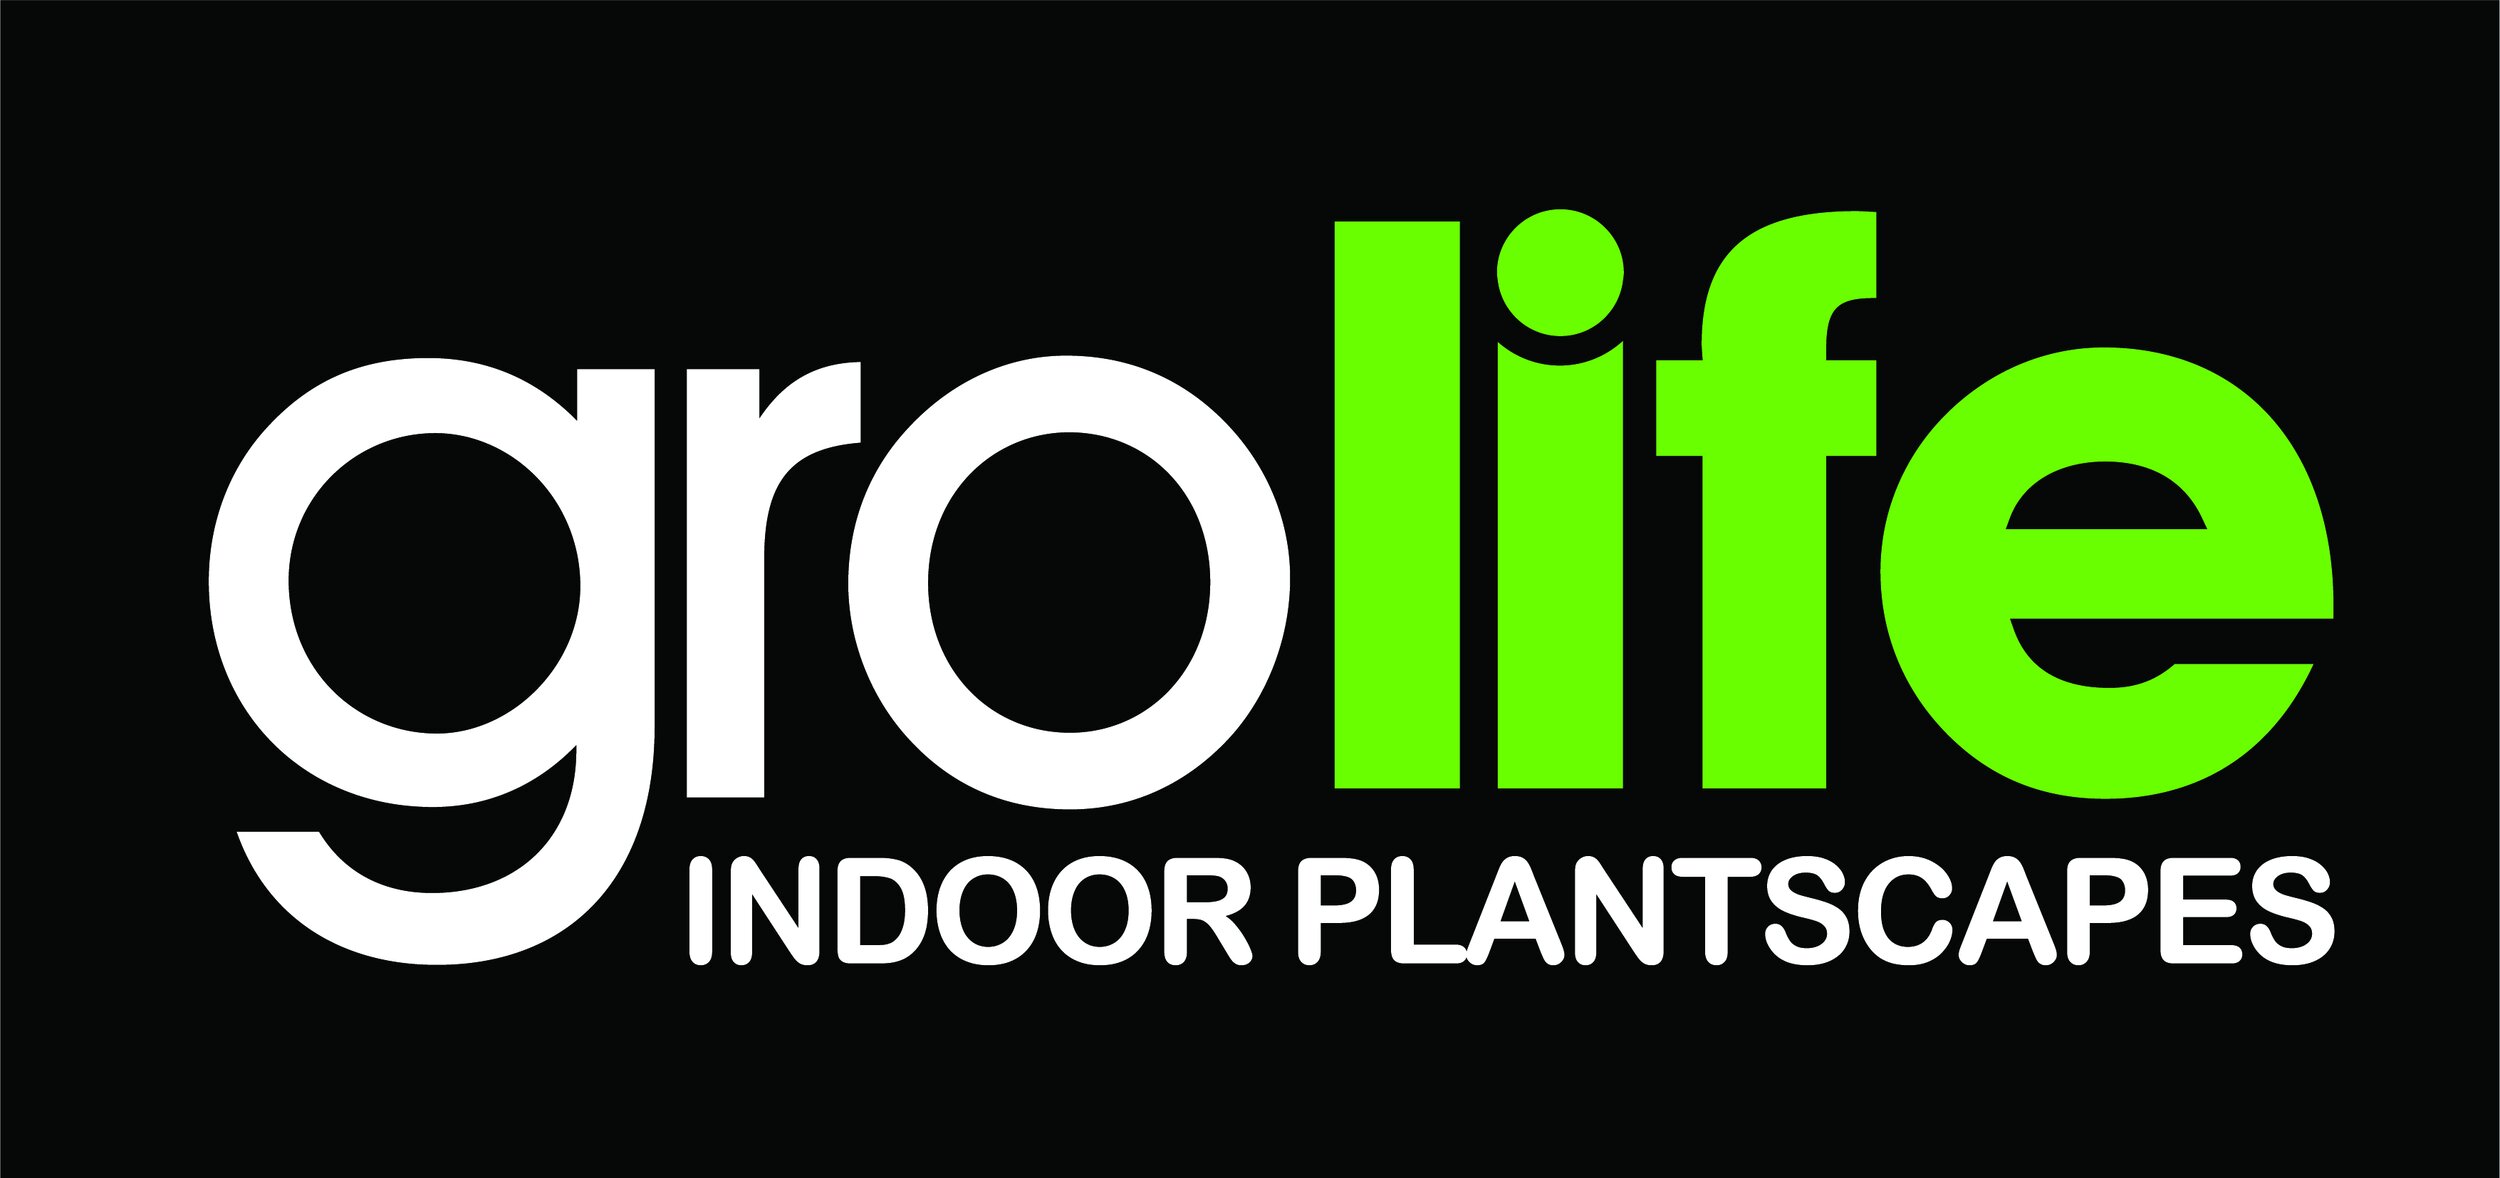 Grolife Indoor Plantscapes-03.jpg